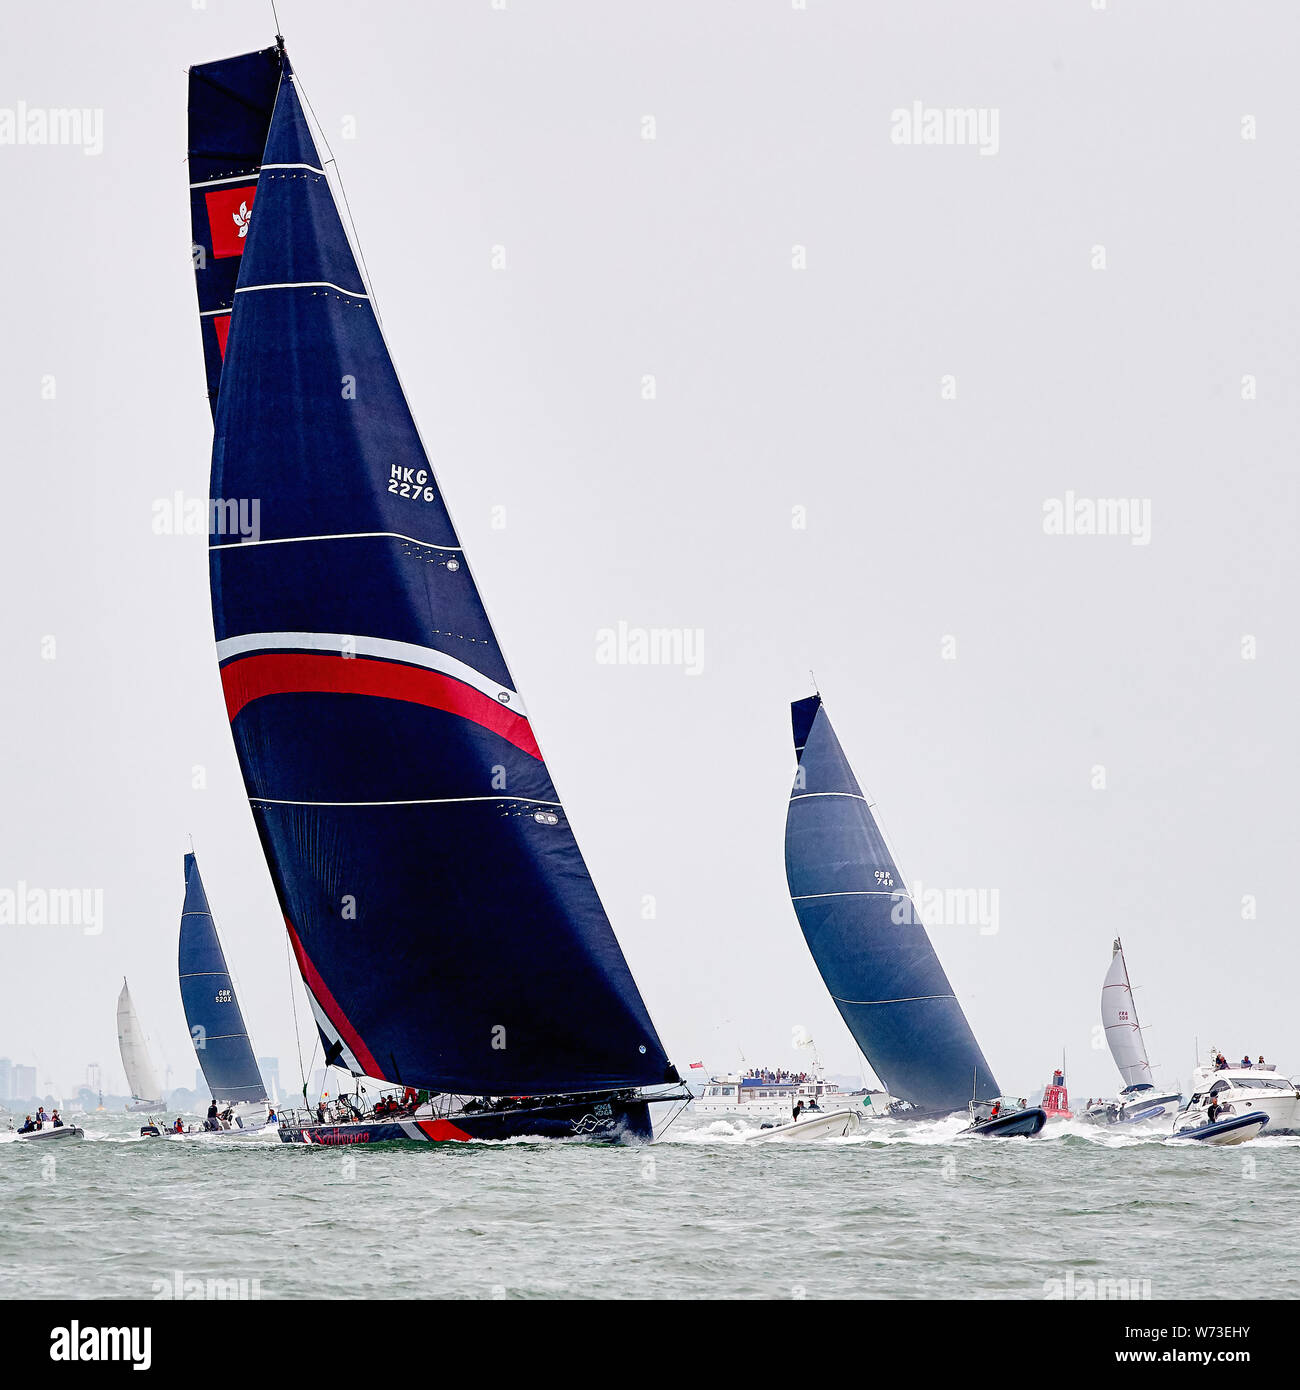 Fastnet race 2019. In barca a vela in mare aperto. Immagine di Scallywag a inizio gara, come yachts jostle per posizione in una leggera brezza. Foto Stock